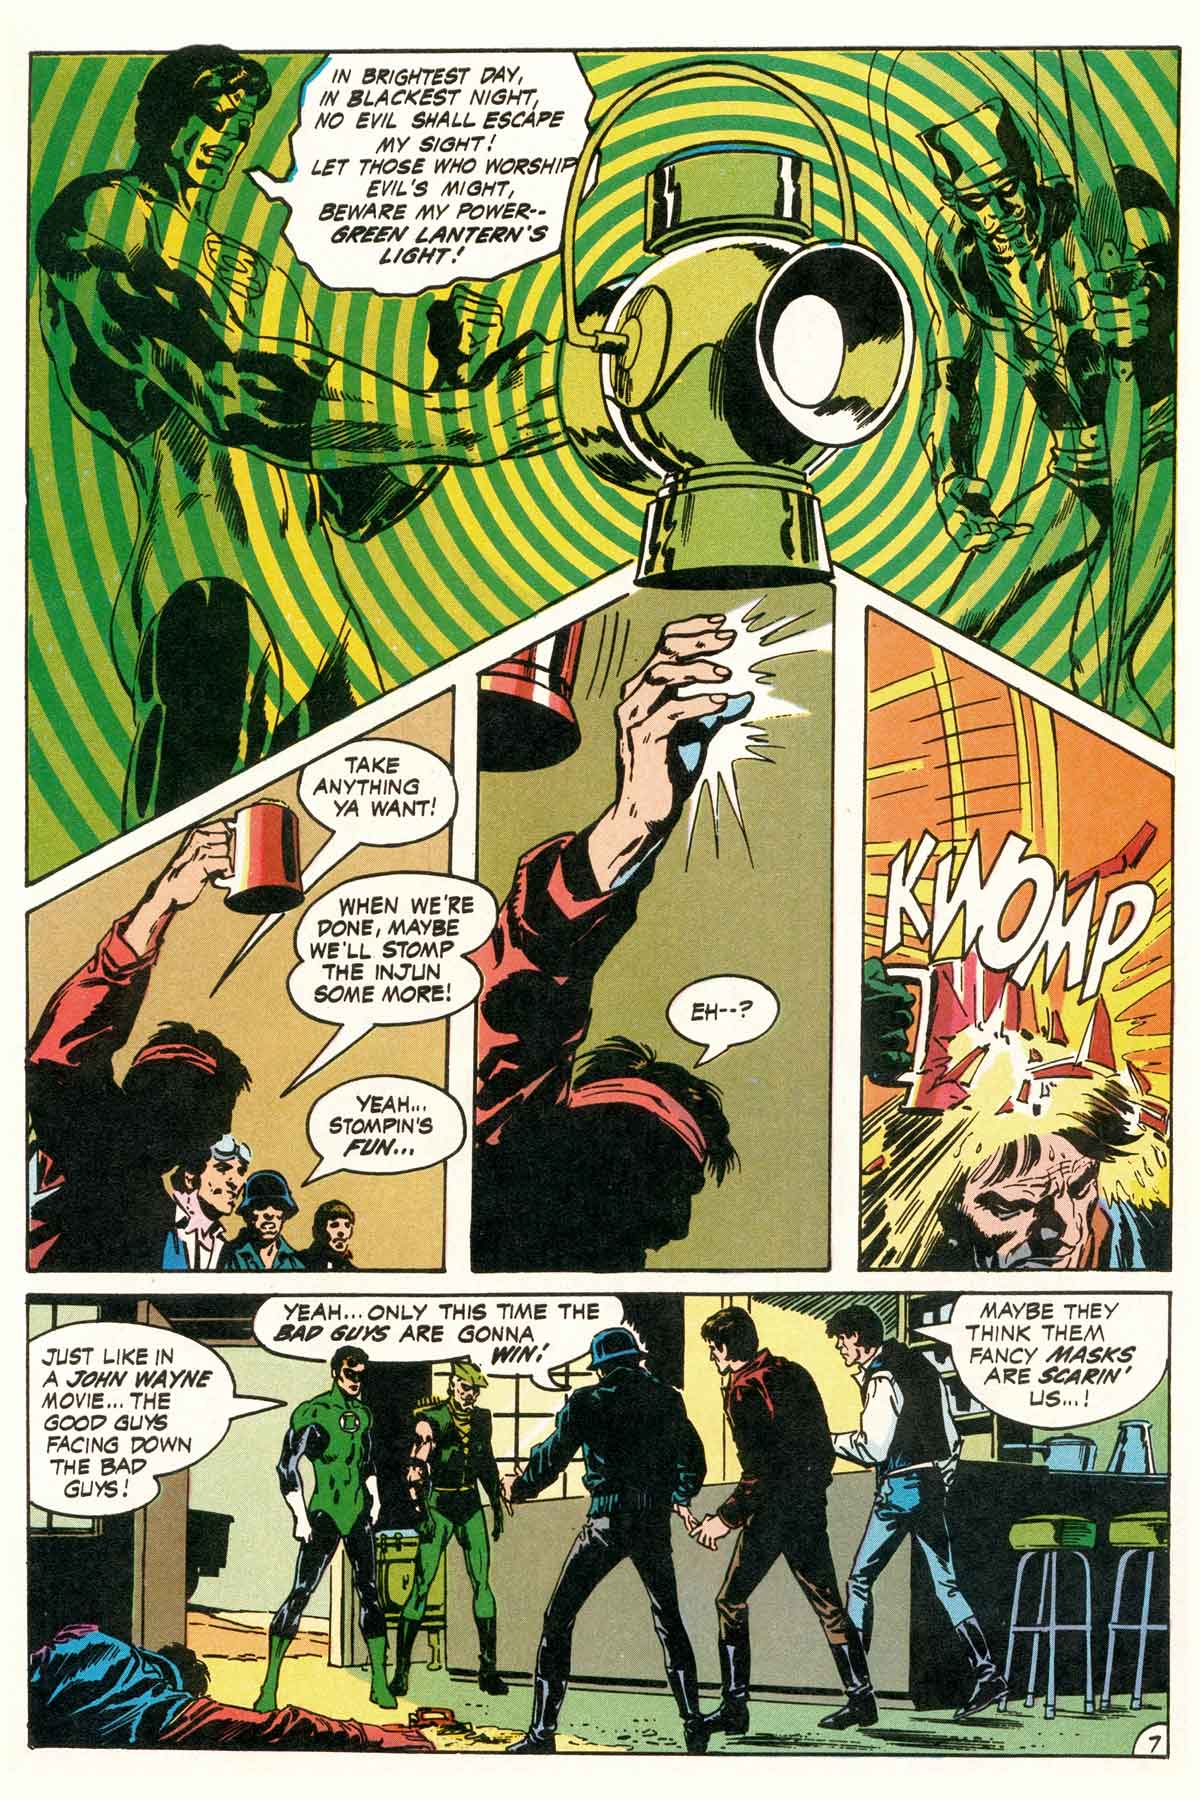 Read online Green Lantern/Green Arrow comic -  Issue #2 - 9